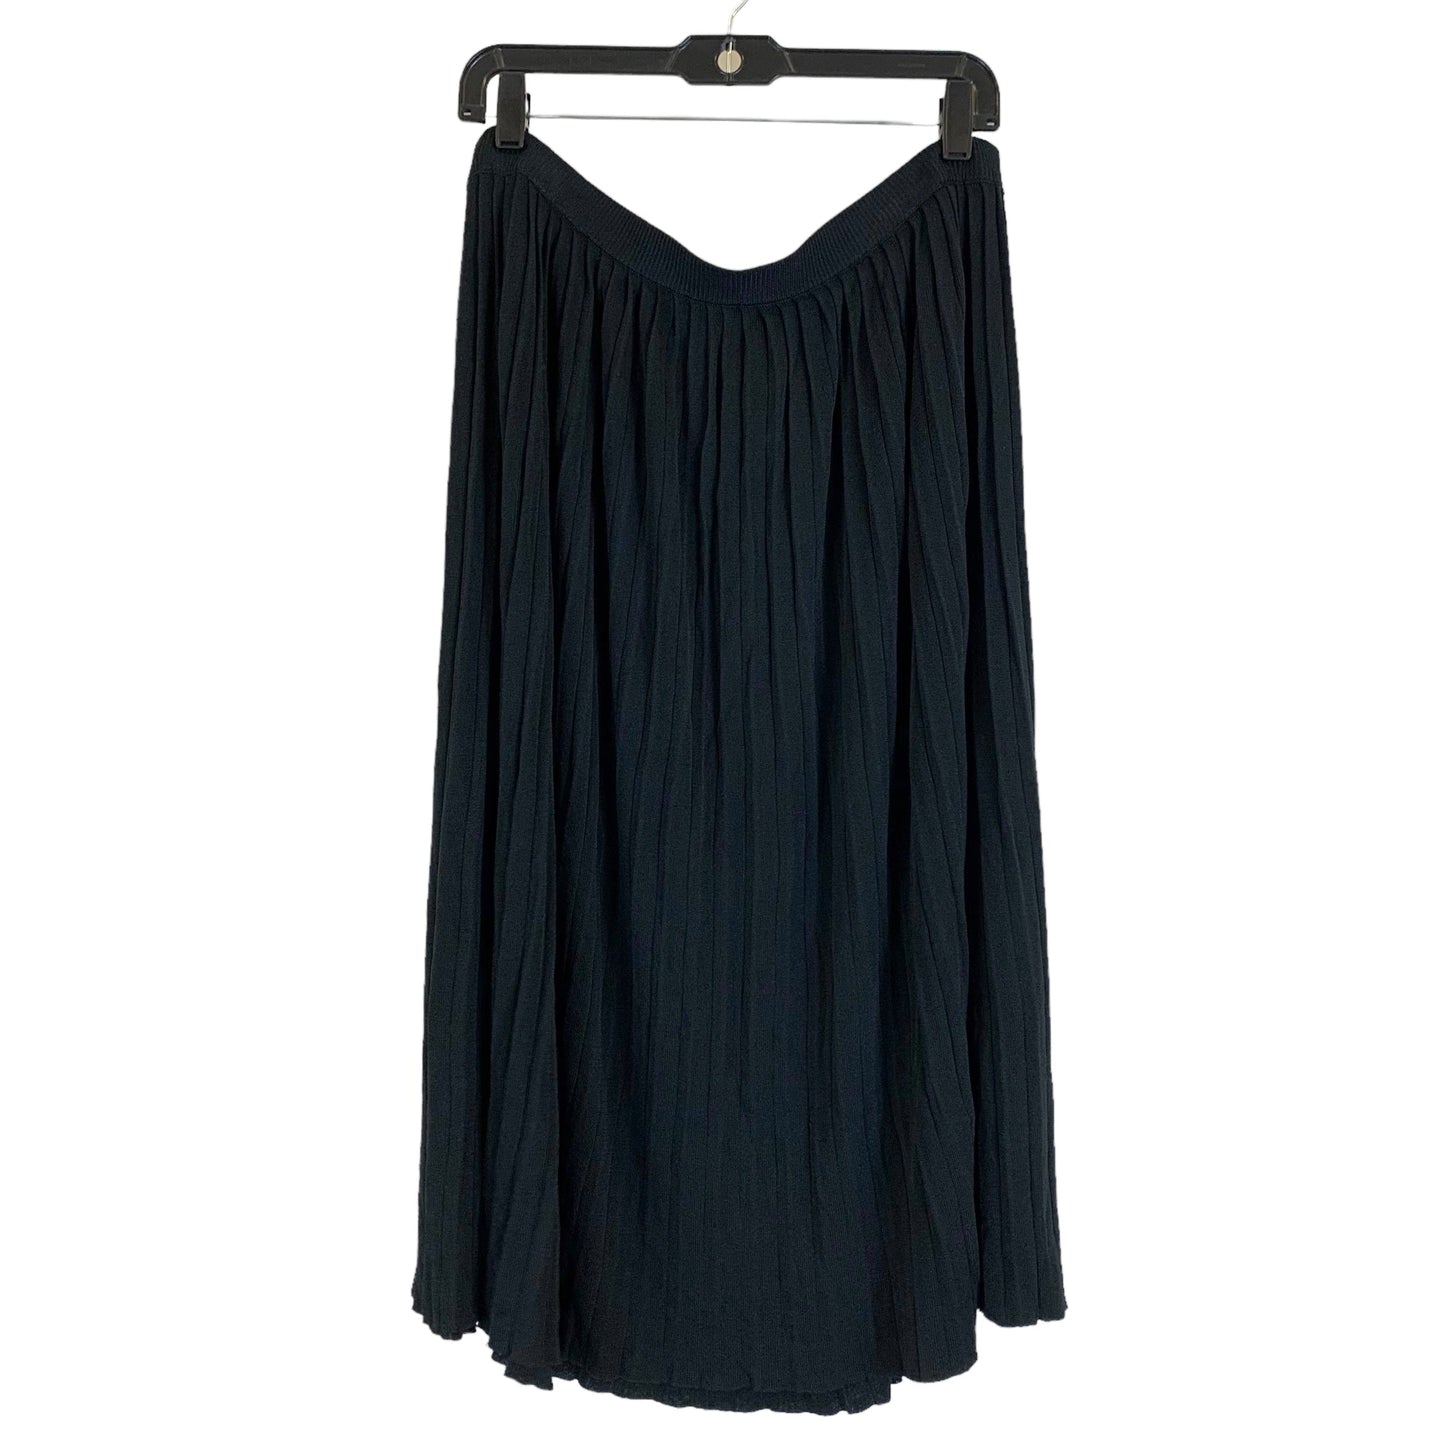 Black Skirt Midi T Tahari, Size 1x